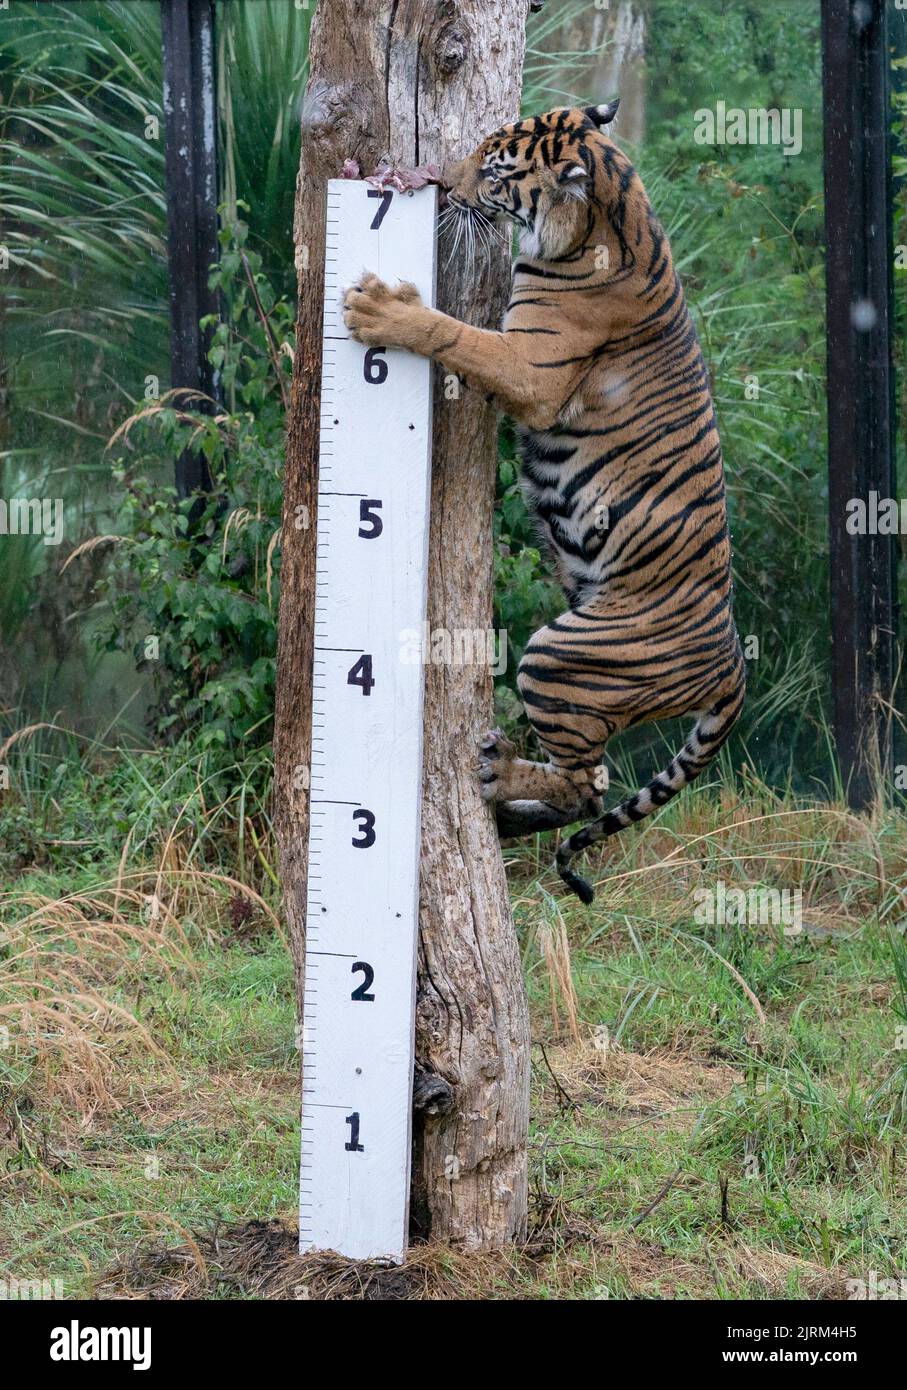 Geysha, die Sumatran, wird während des jährlichen Wiegevorgangs im ZSL London Zoo, London, ihre Körpergröße gemessen. Bilddatum: Donnerstag, 25. August 2022. Stockfoto